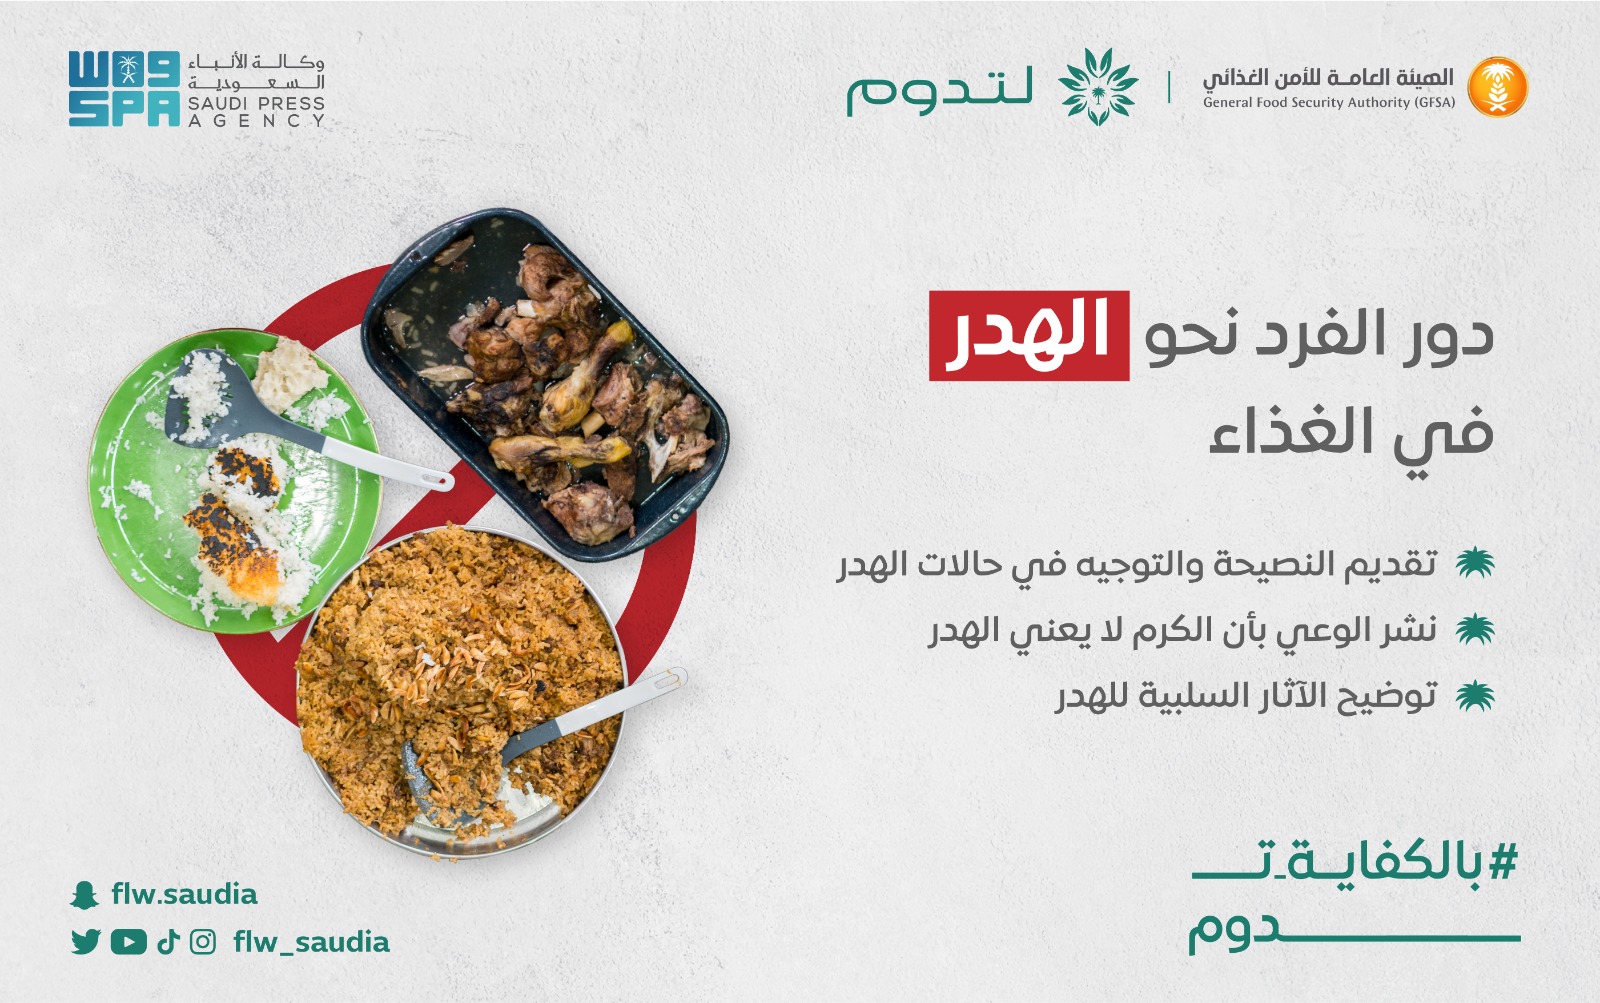 دور الفرد في مواجهة هدر الطعام في المملكة العربية السعودية